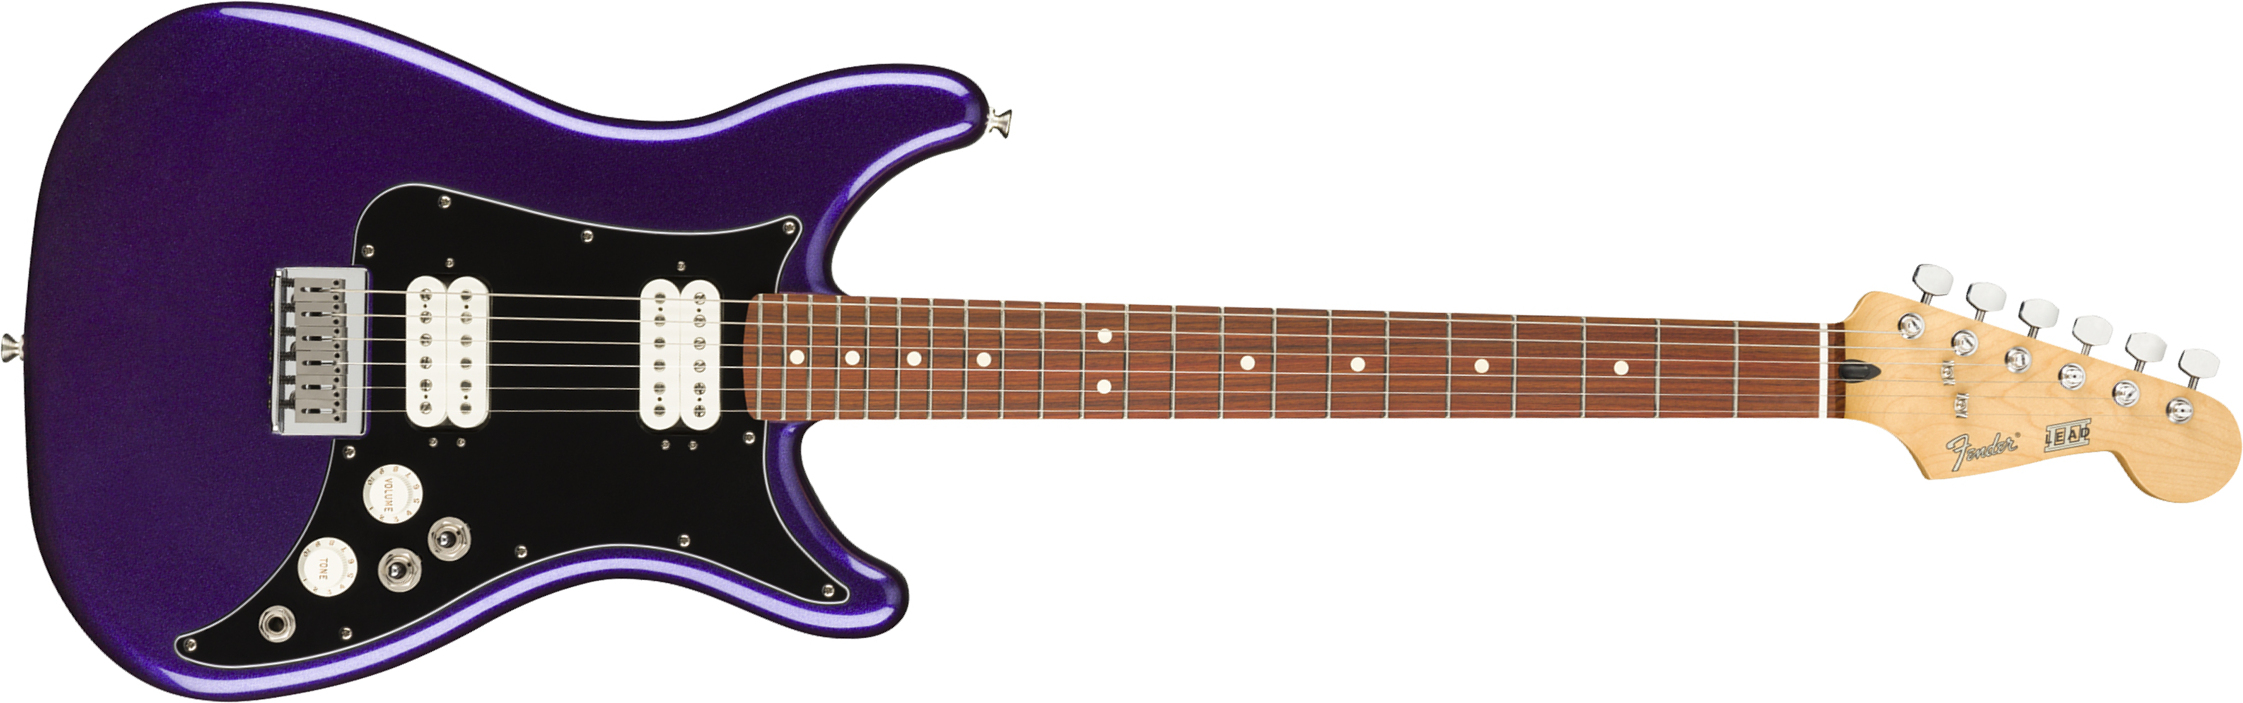 Fender Lead Iii Player Mex Hh Ht Pf - Metallic Purple - Guitare Électrique Forme Str - Main picture